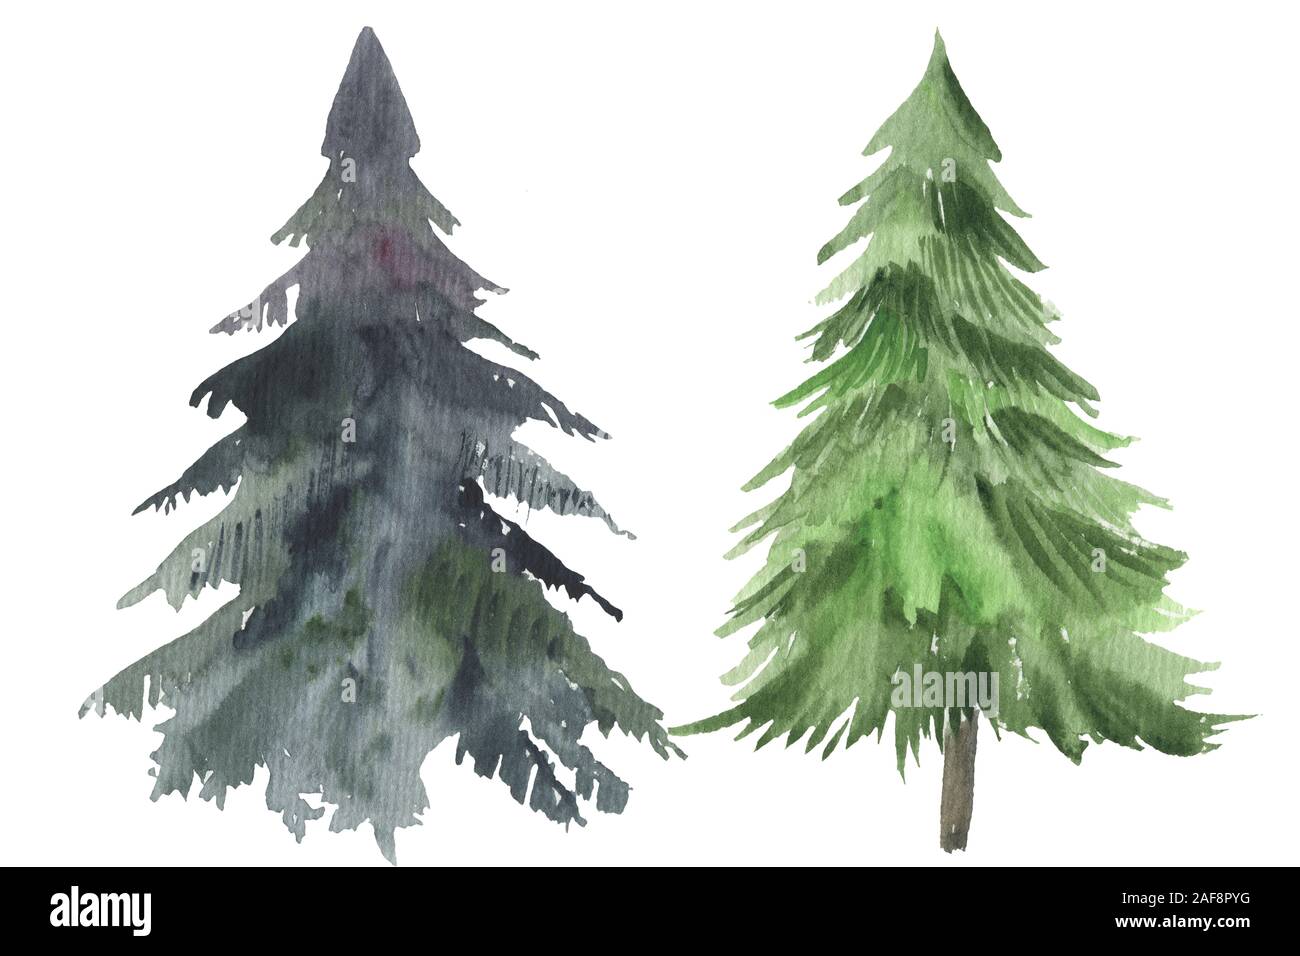 Arbre de Noël de l'icône de l'aquarelle. Collecte de nouvelles années avec des arbres de Noël à rayures des hérauts, pin de noël. Banque D'Images